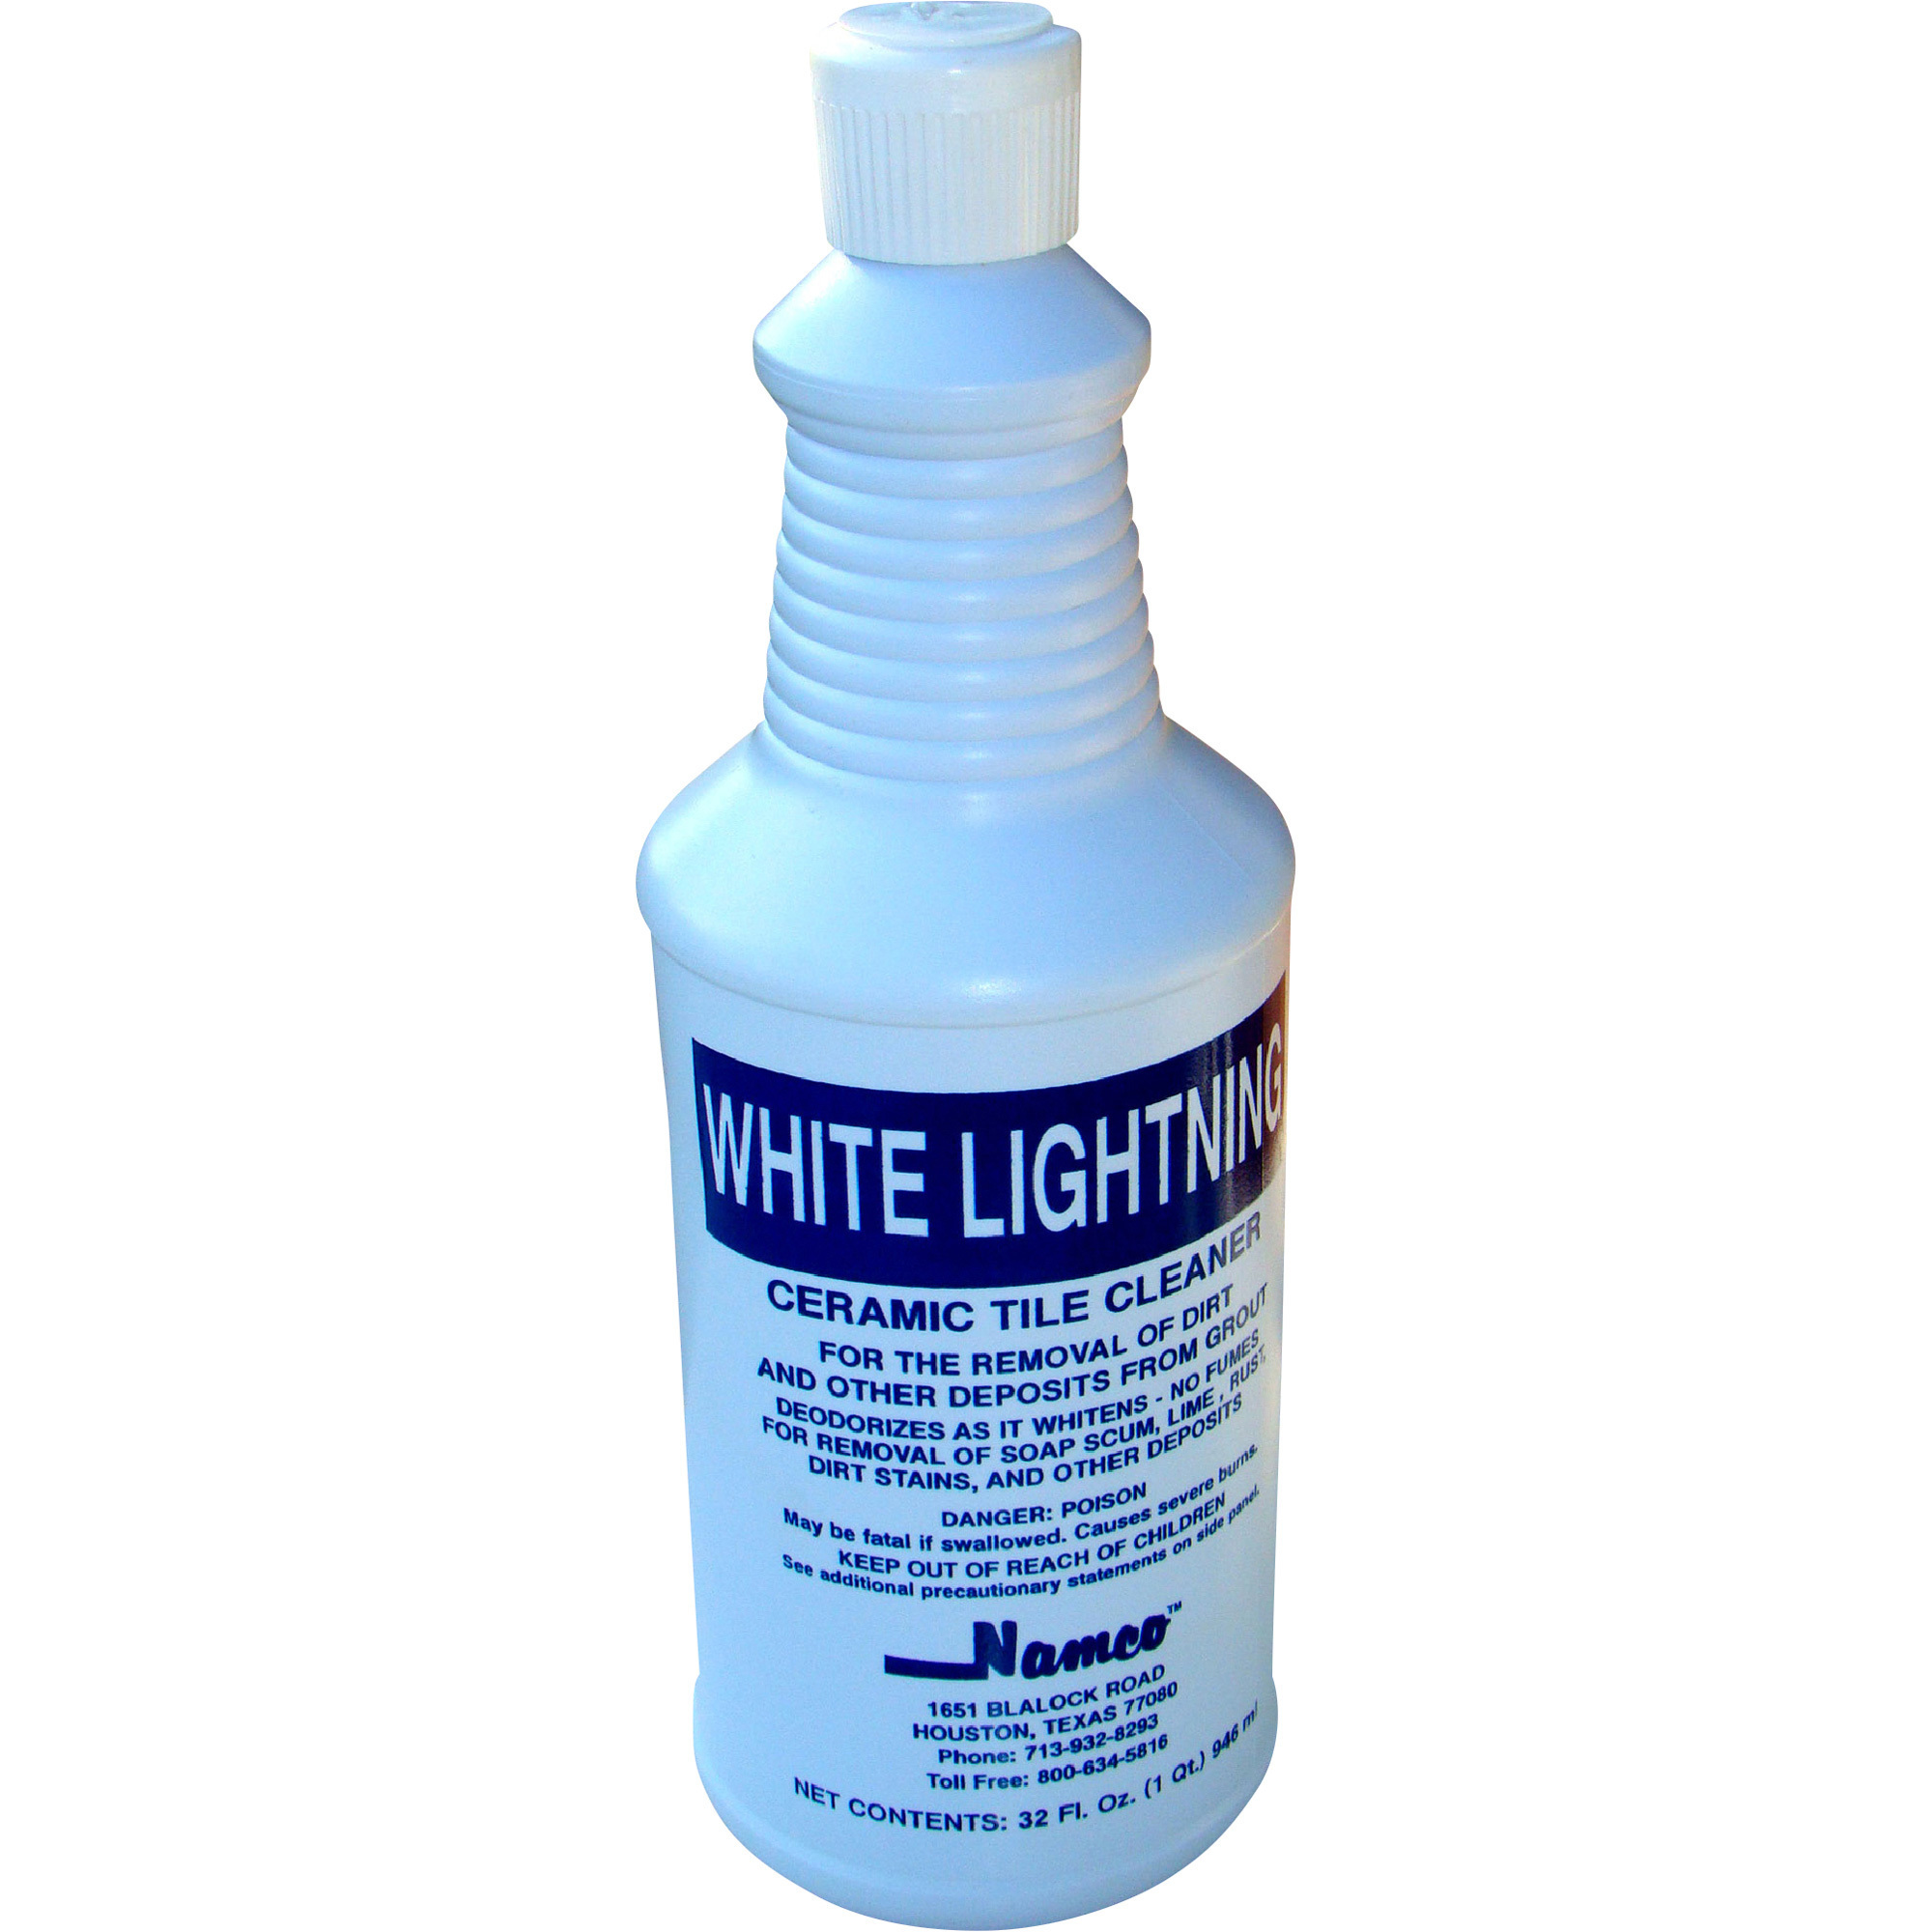 Namco White Lightning Ceramic Tile Cleaner — 12-Pack, 1-Qt. Bottles, Model#  2043B